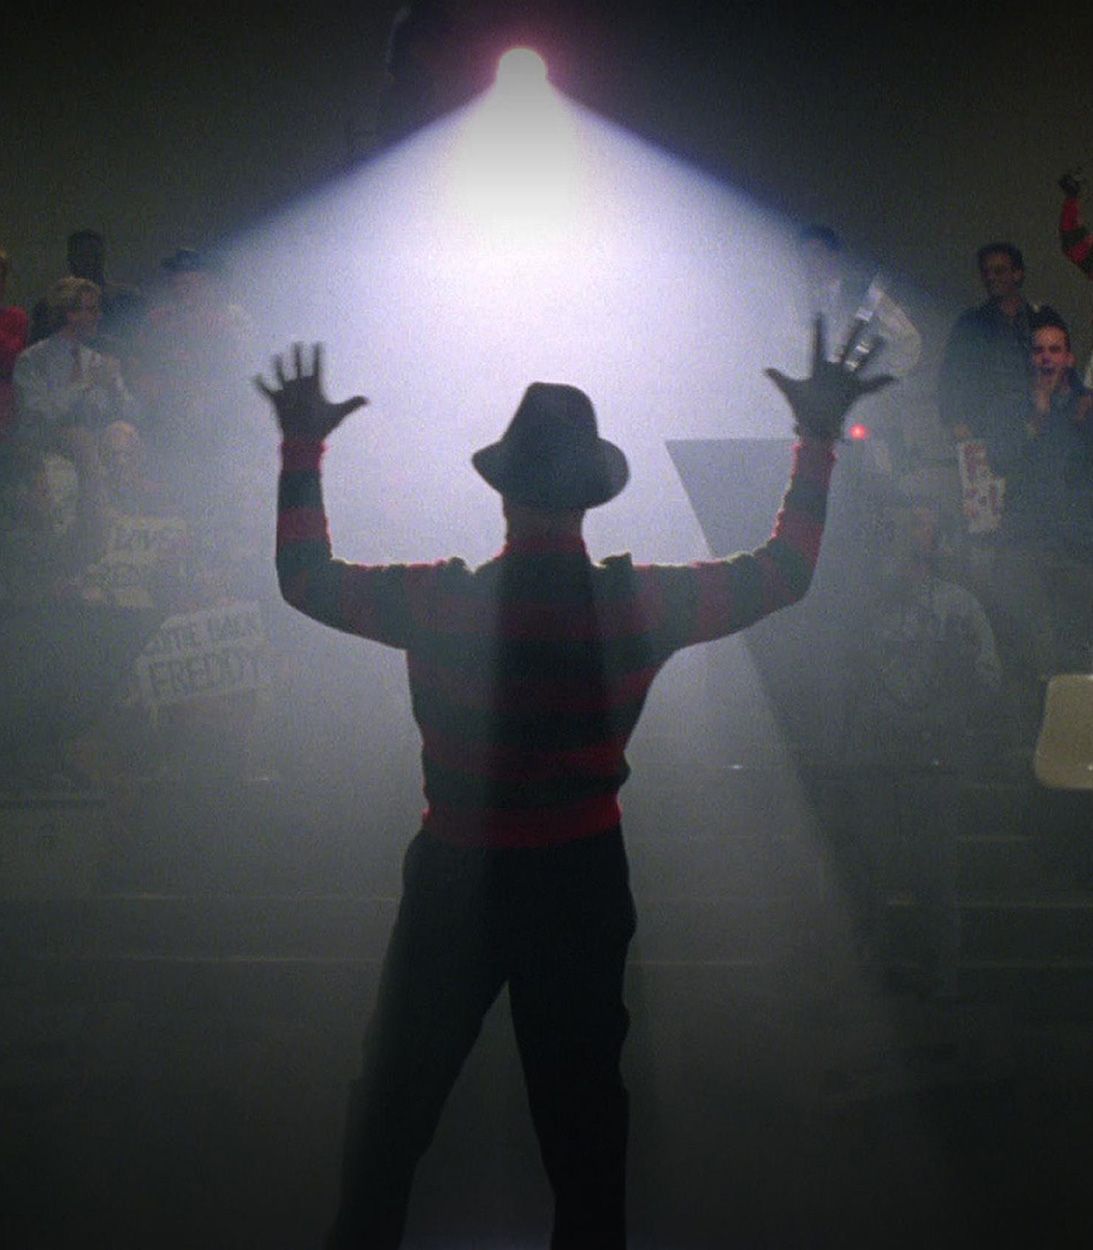 Robert Englund as Freddy Krueger in New Nightmare vertical